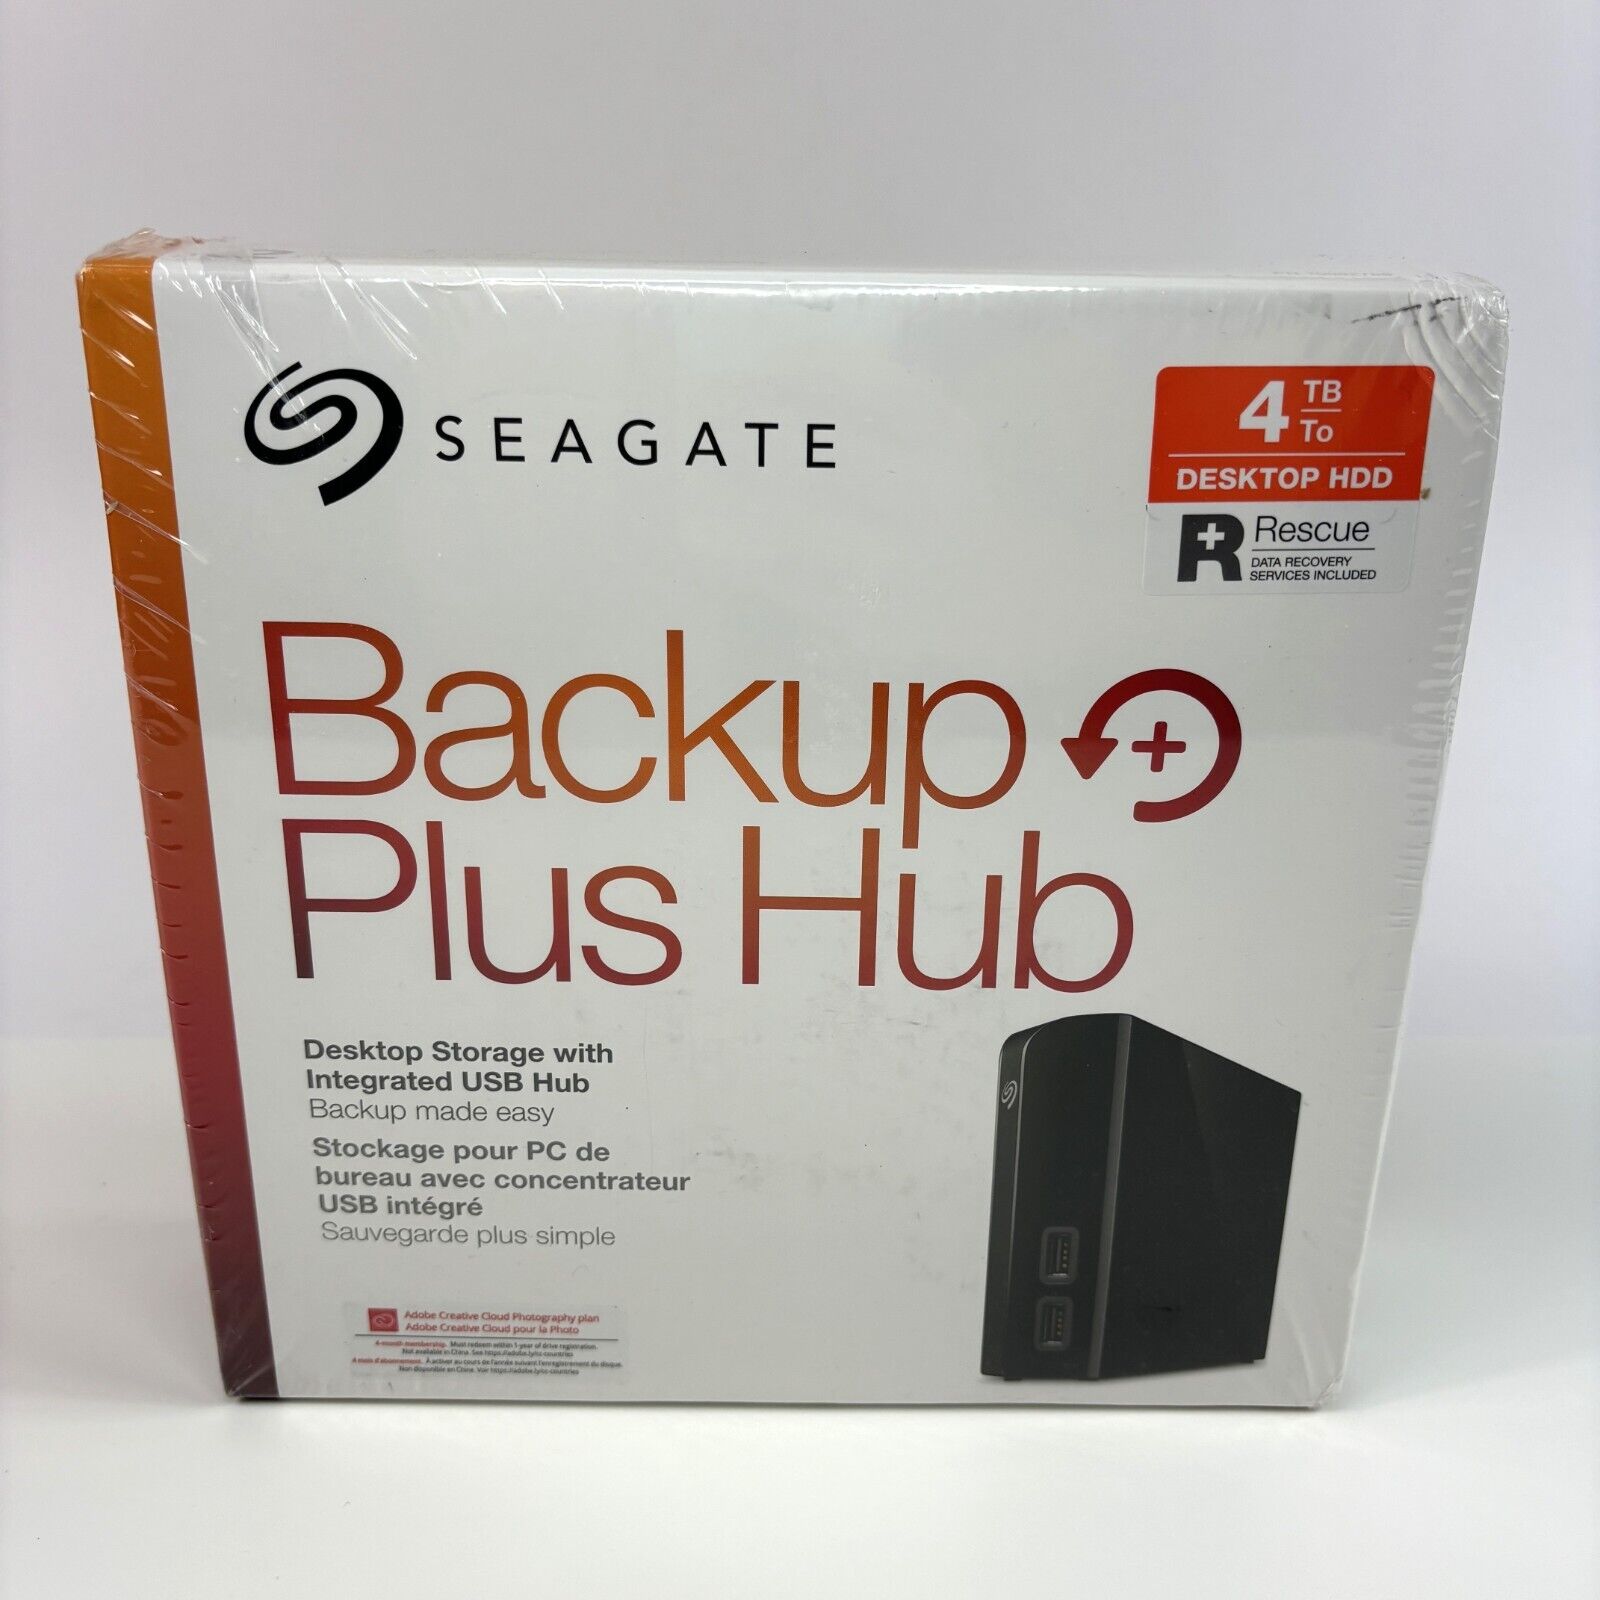 NEW SEAGATE Backup Plus Hub STEL4000100 4TB USB 3.0 External Hard Drive SEALED